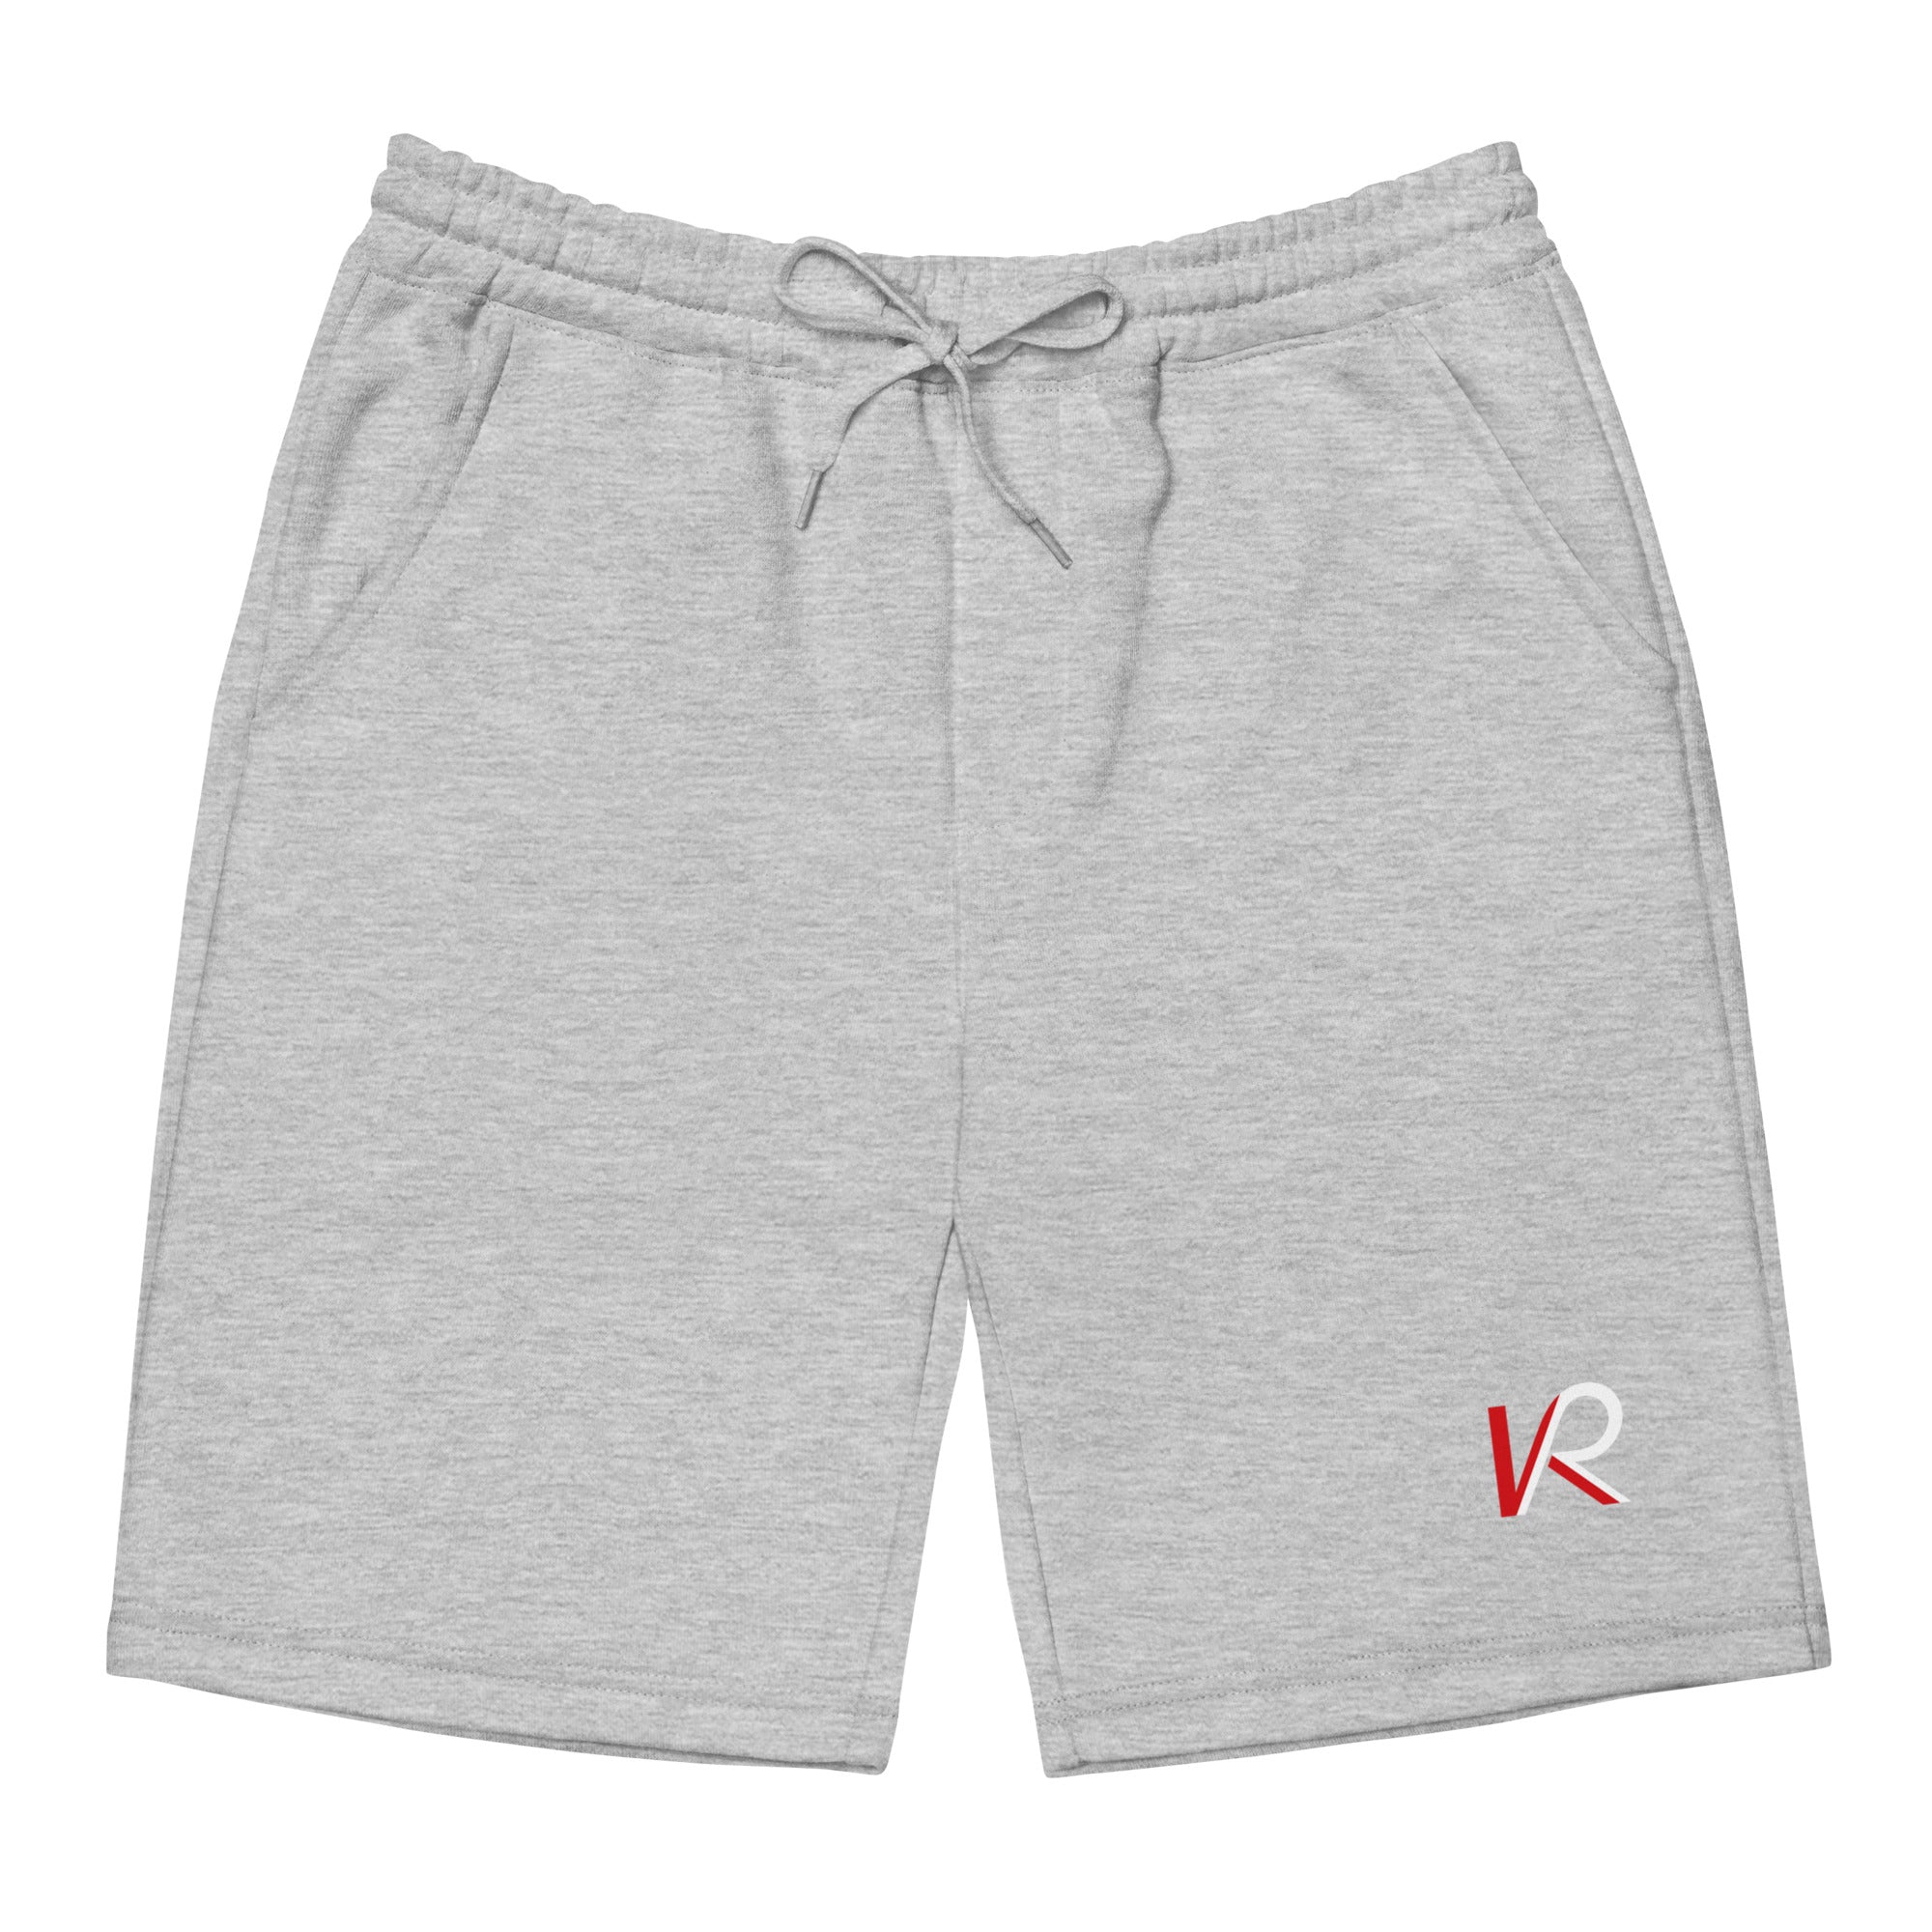 teamKR Shorts